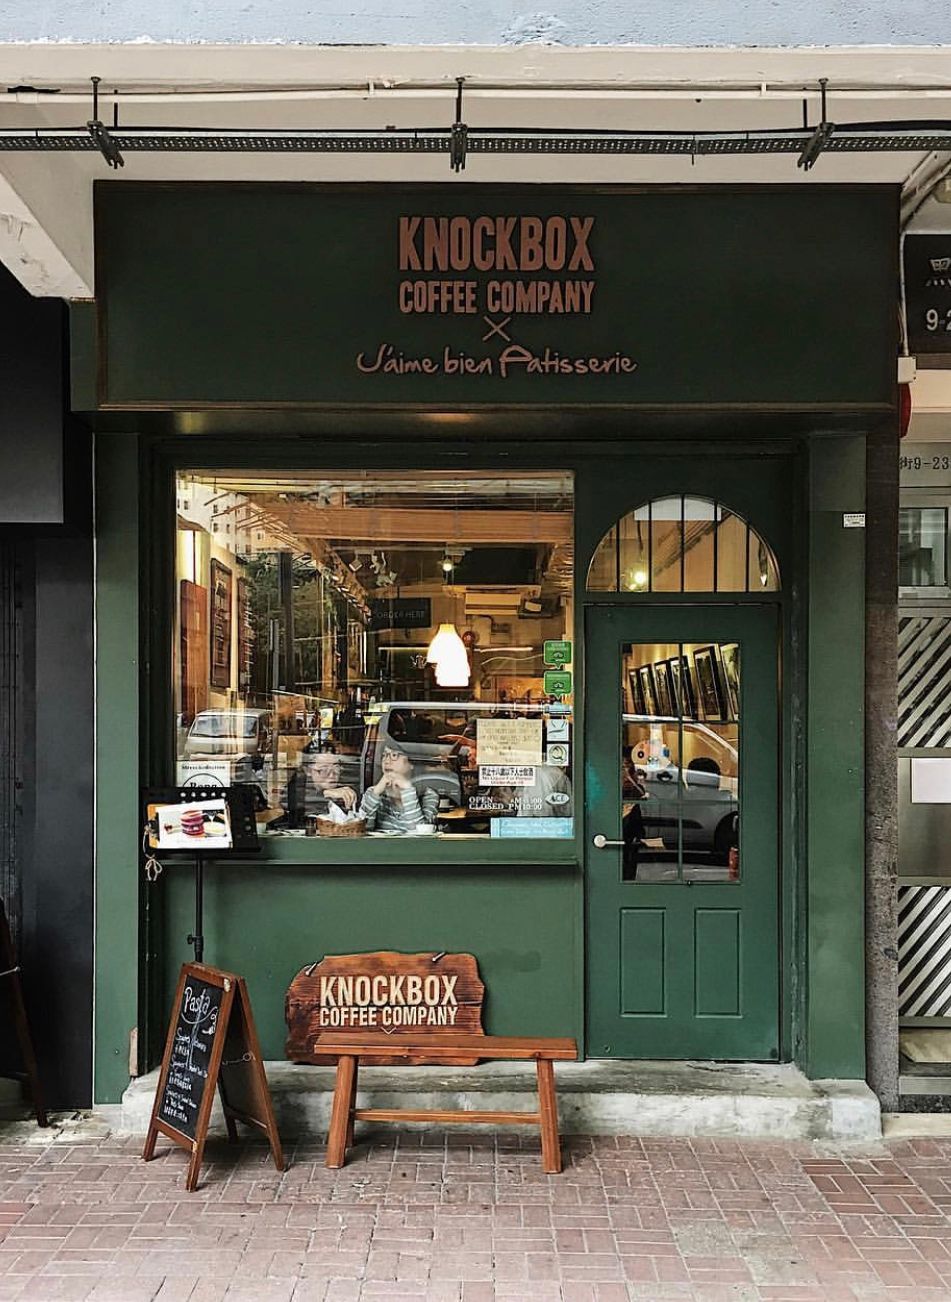 旺角cafe knockbox coffee company 店面極具英倫風